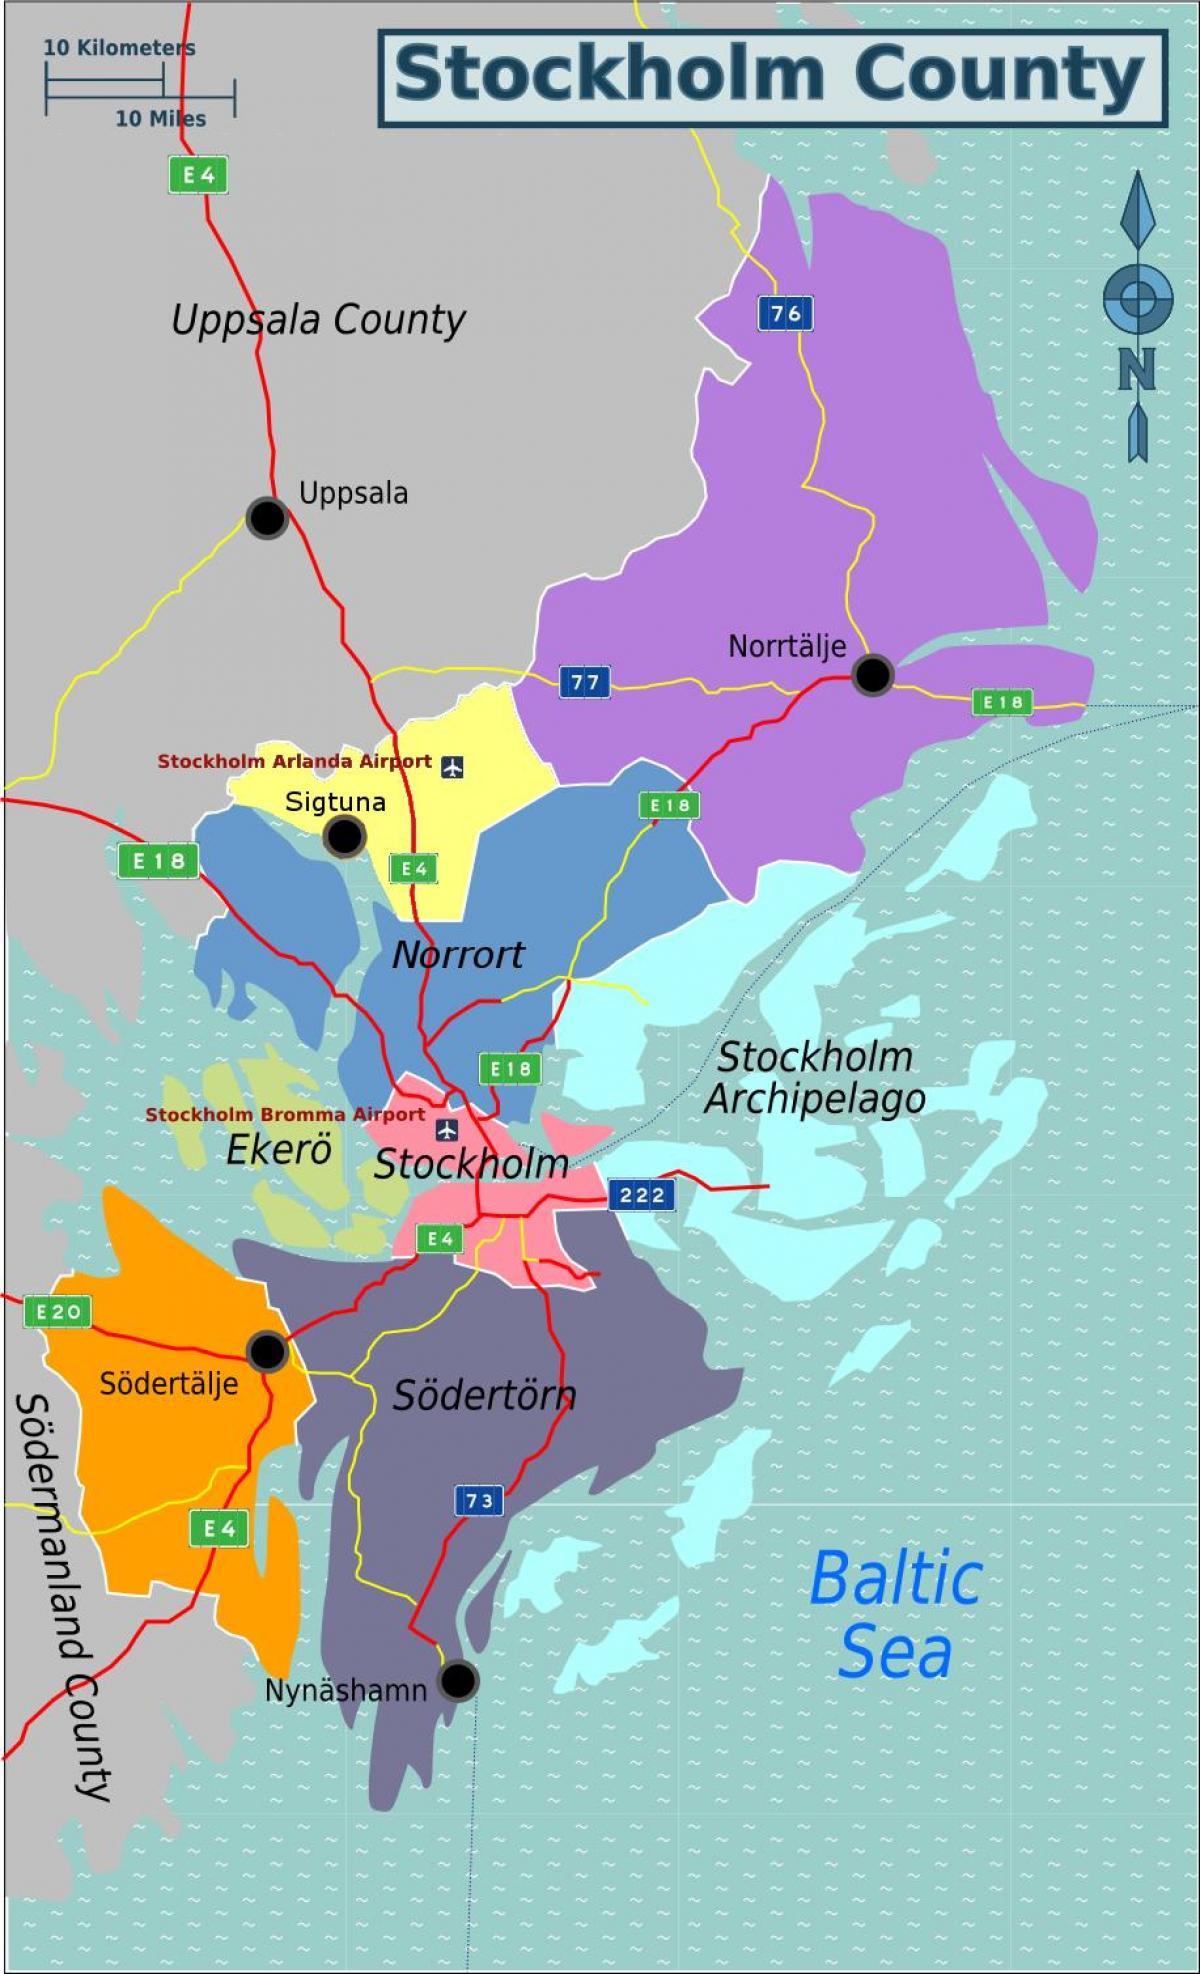 Karte von Stockholm, Schweden area